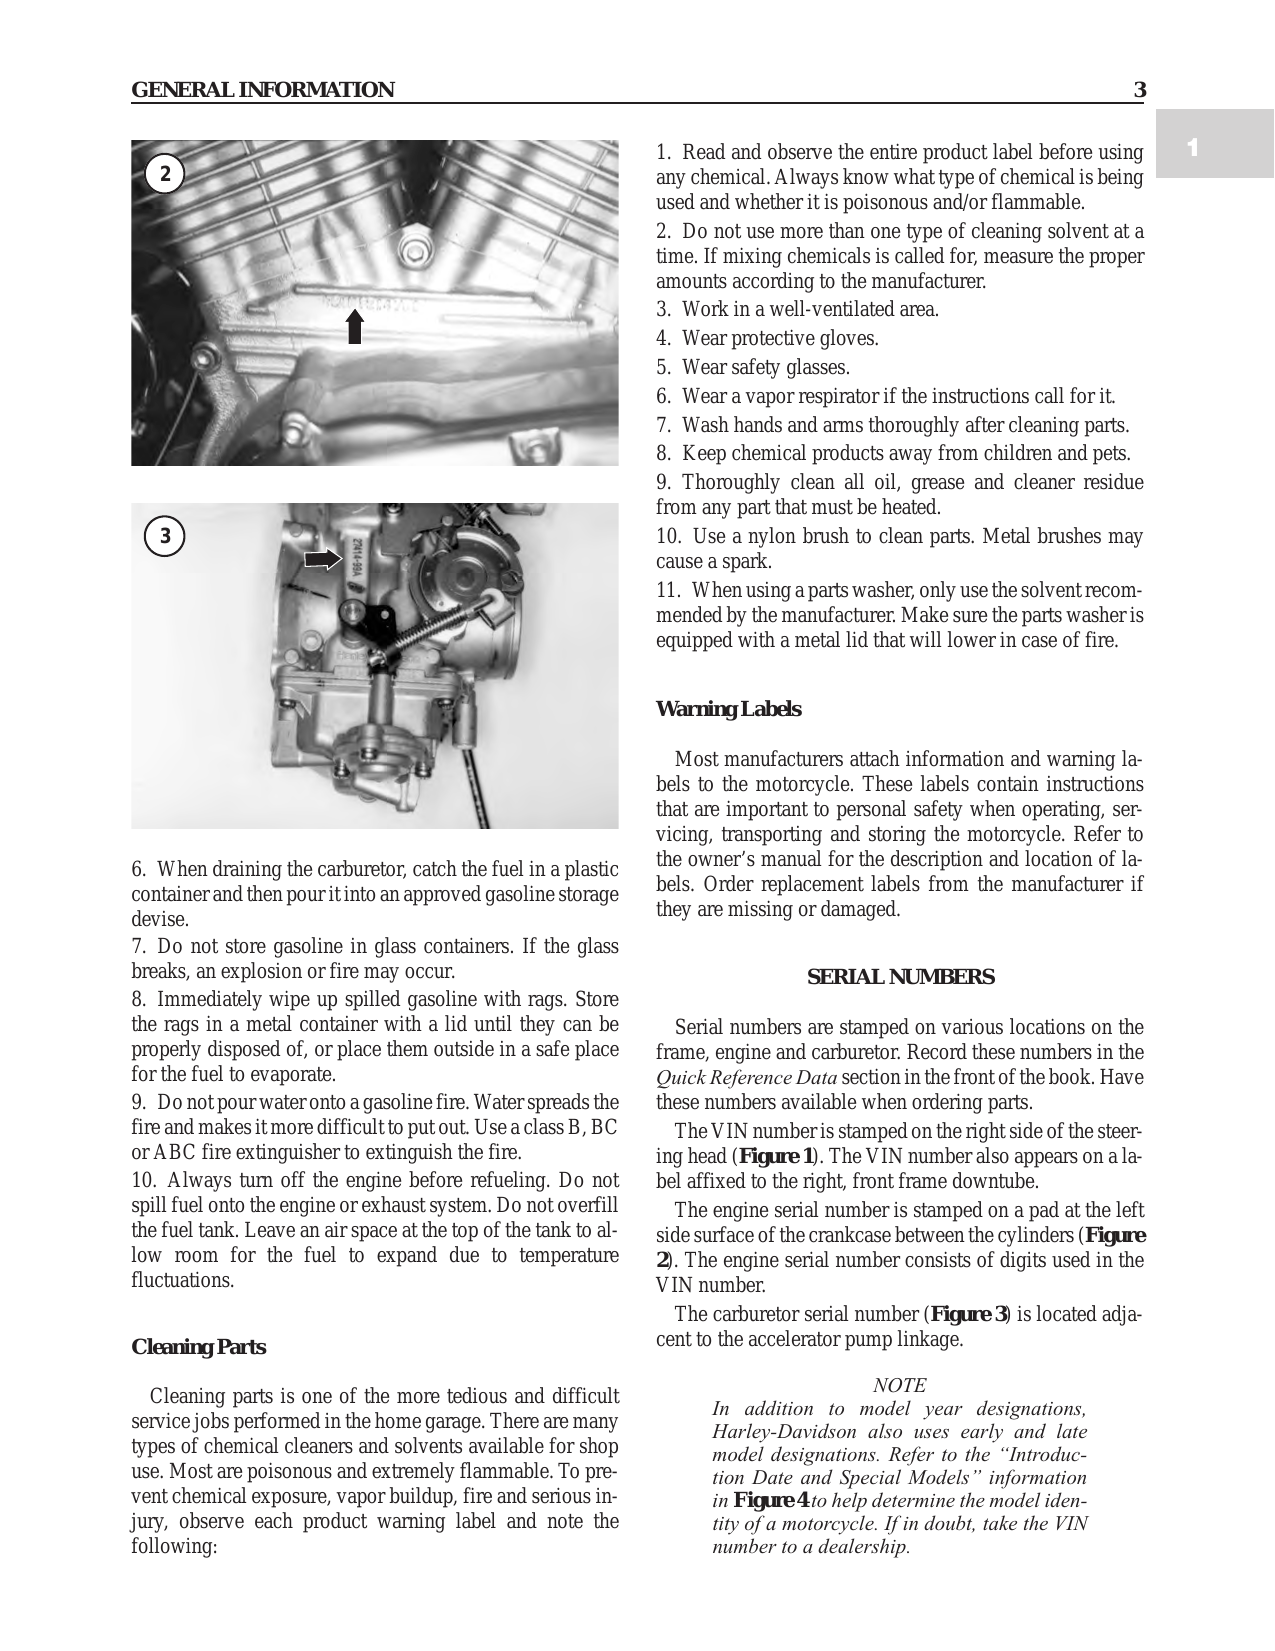 1995-2003 Harley-Davidson Sportster repair manual Preview image 3